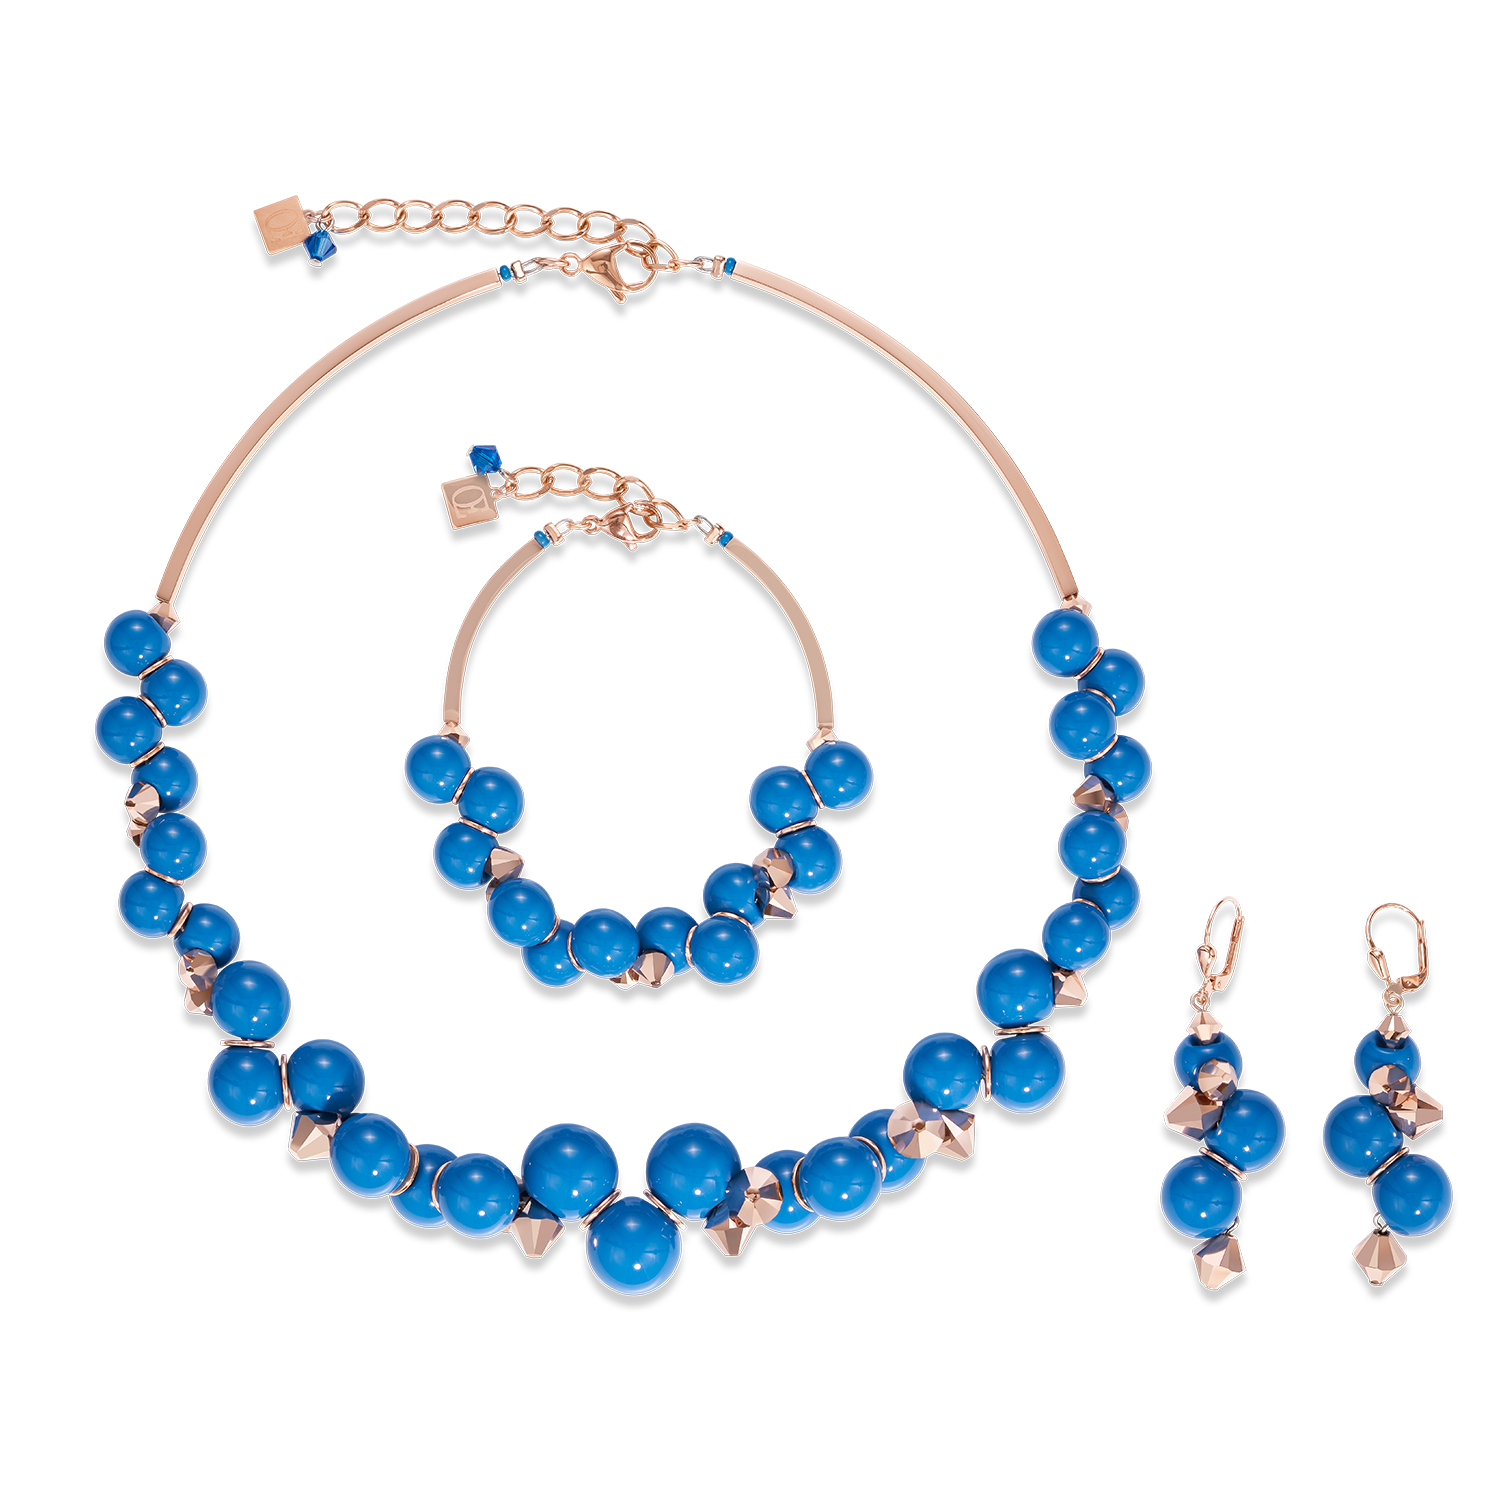 Bracelet verre acrylique bleu & Cristaux or rose